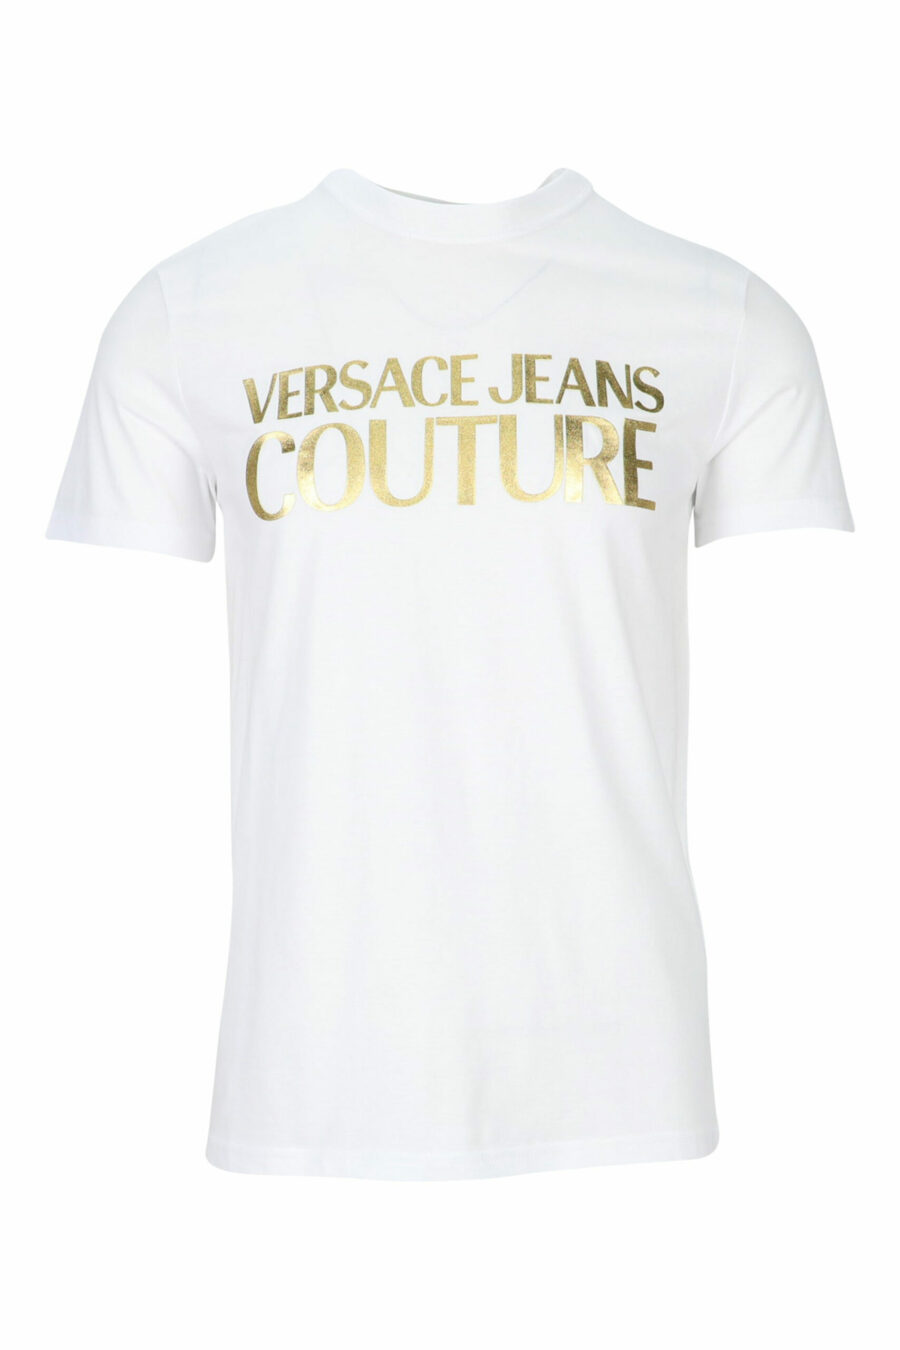 Weißes T-Shirt mit glänzendem Gold klassischen maxilogue - 8052019456738 skaliert